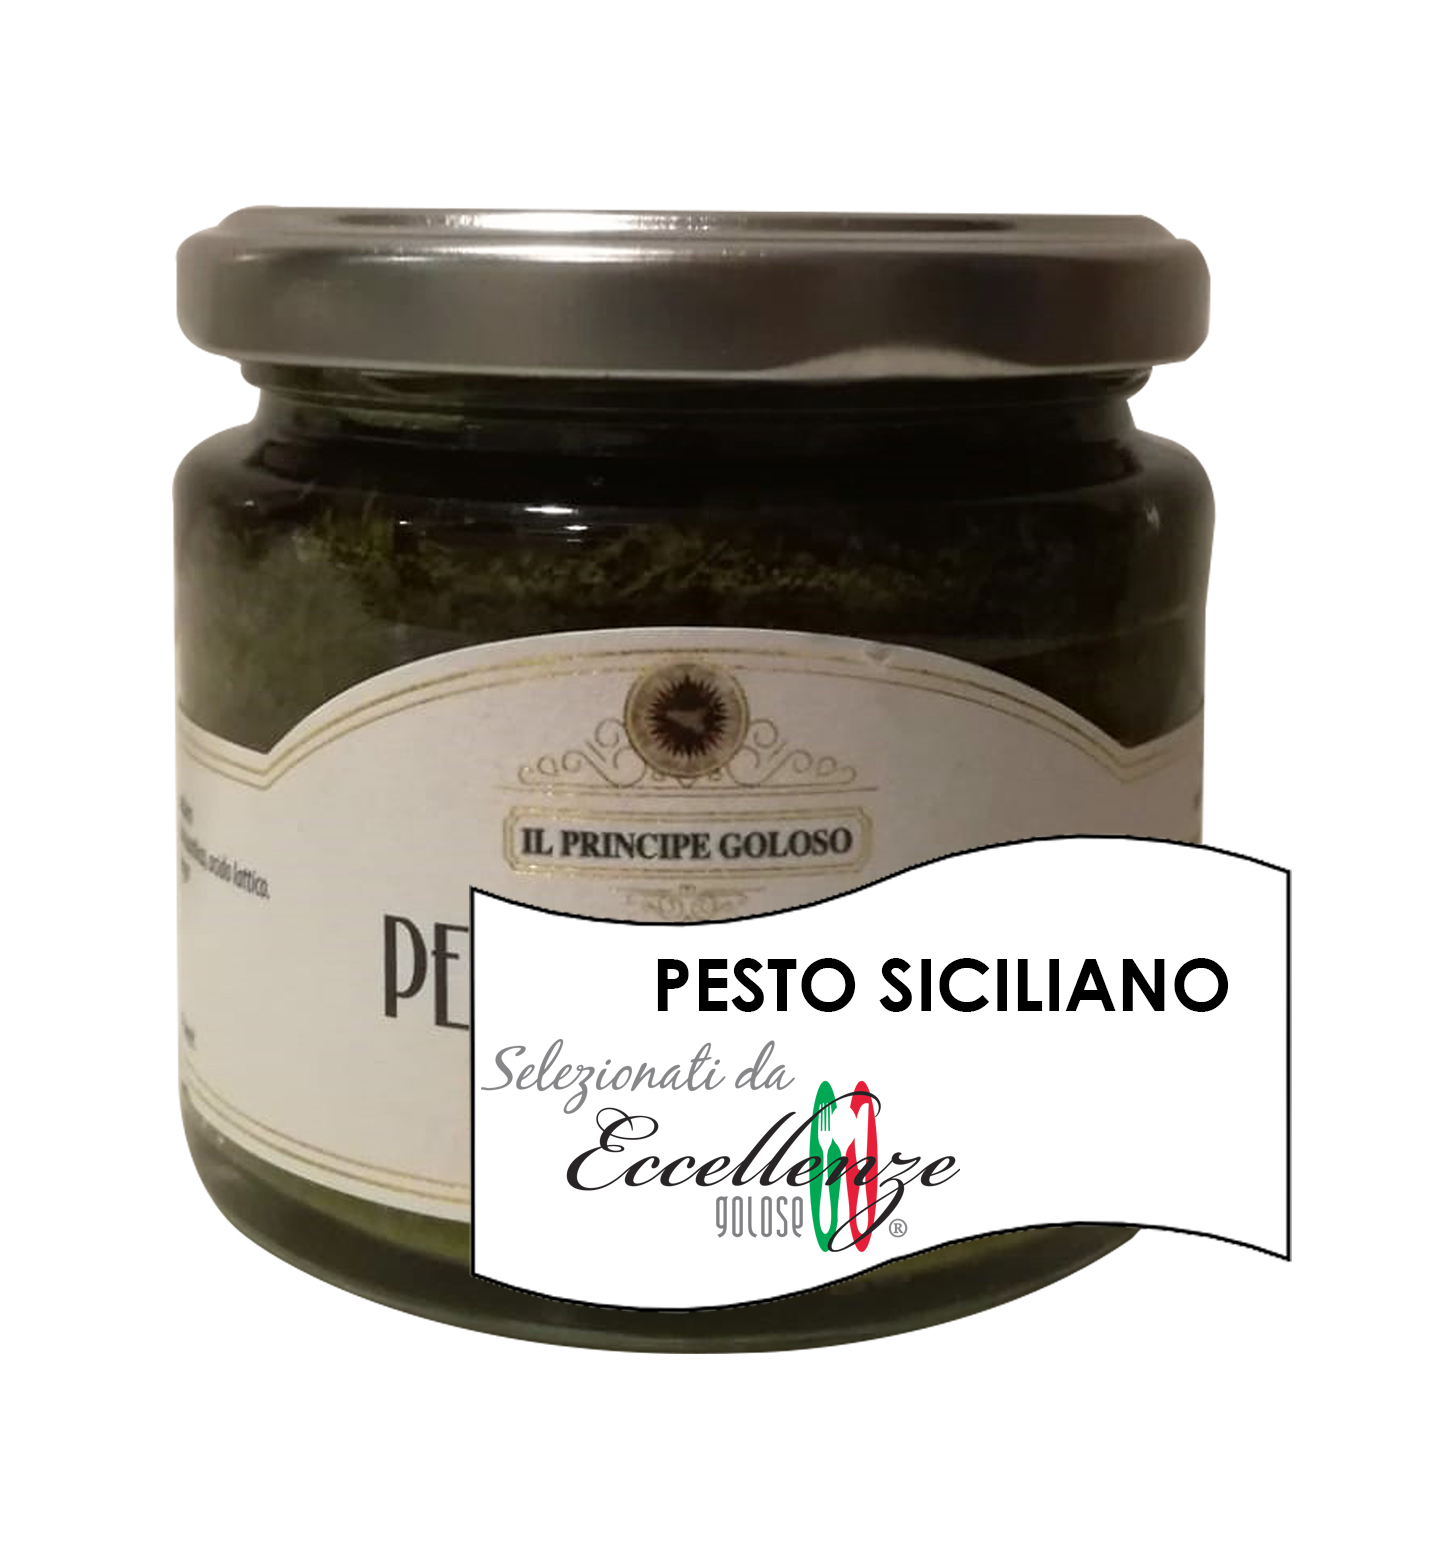 Pesto-Siciliano-Extra-Eccellenze-Golose